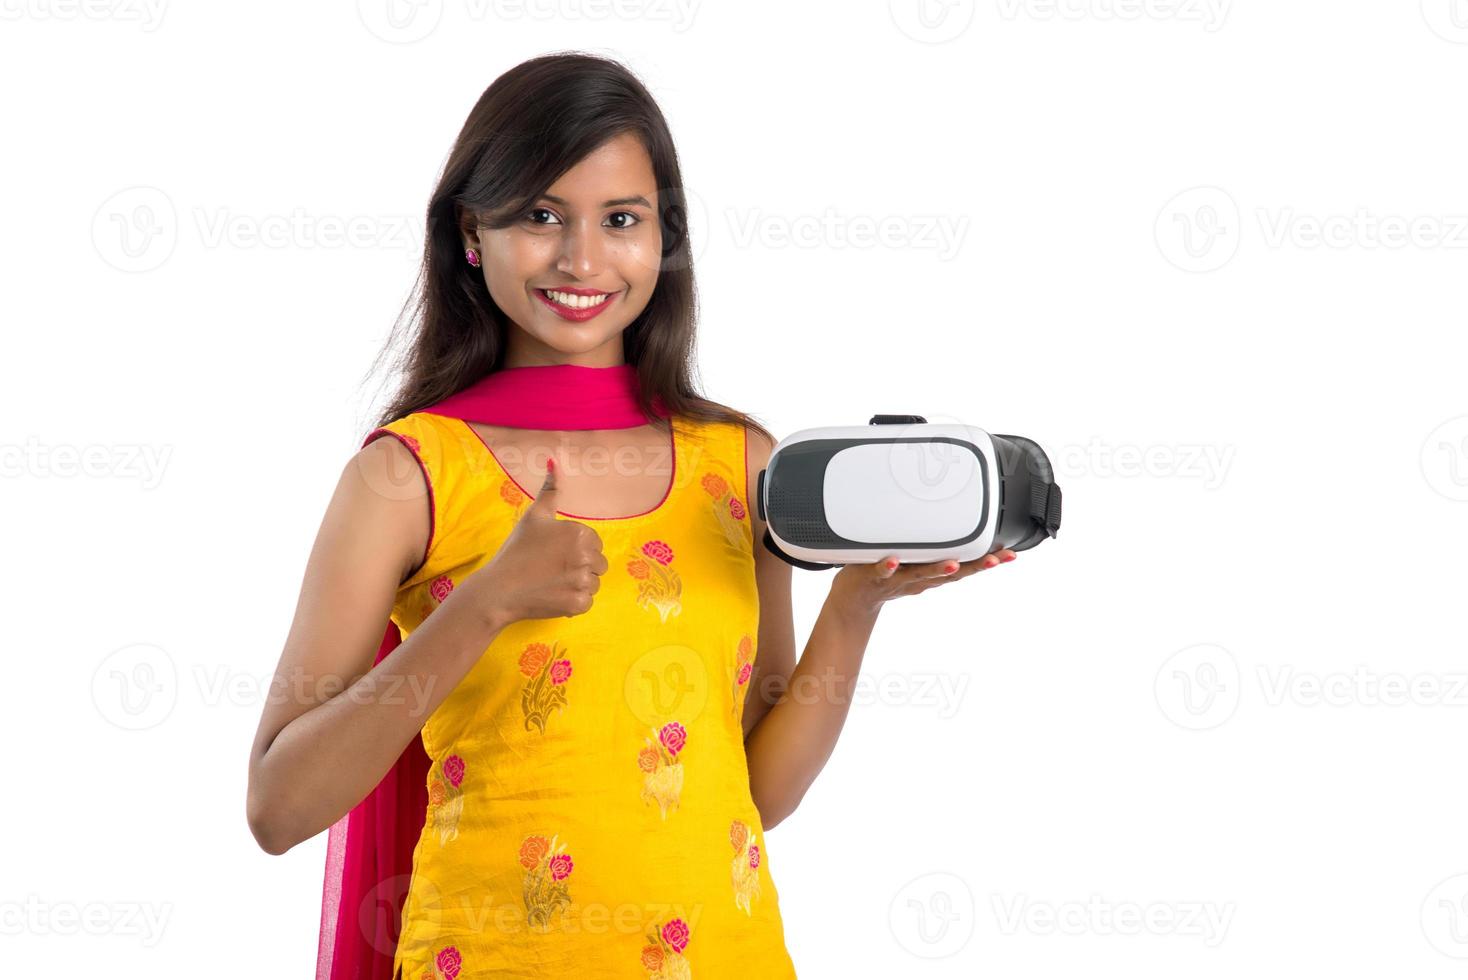 ragazza tradizionale indiana che tiene e mostra dispositivo vr, scatola vr, occhiali, cuffie per occhiali per realtà virtuale 3d, ragazza con moderna tecnologia futura di imaging su sfondo bianco. foto